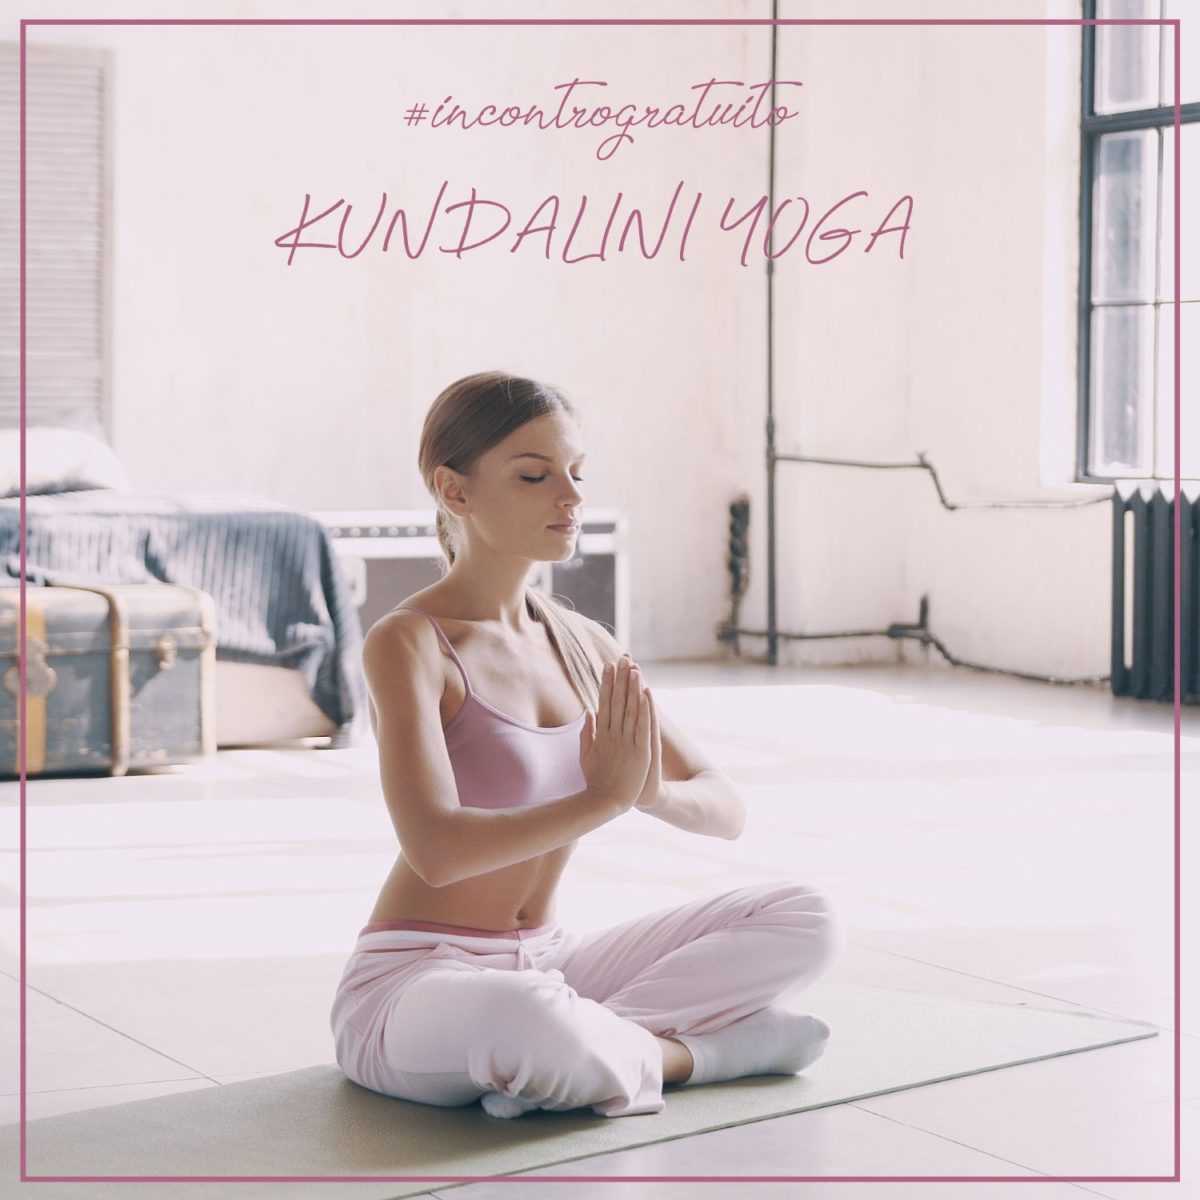 Incontro-gratuito-Kundalini-Yoga-lunedì-21-ottobre-ore-19.00-presso-il-centro-B-Woman-1200x1200.jpeg